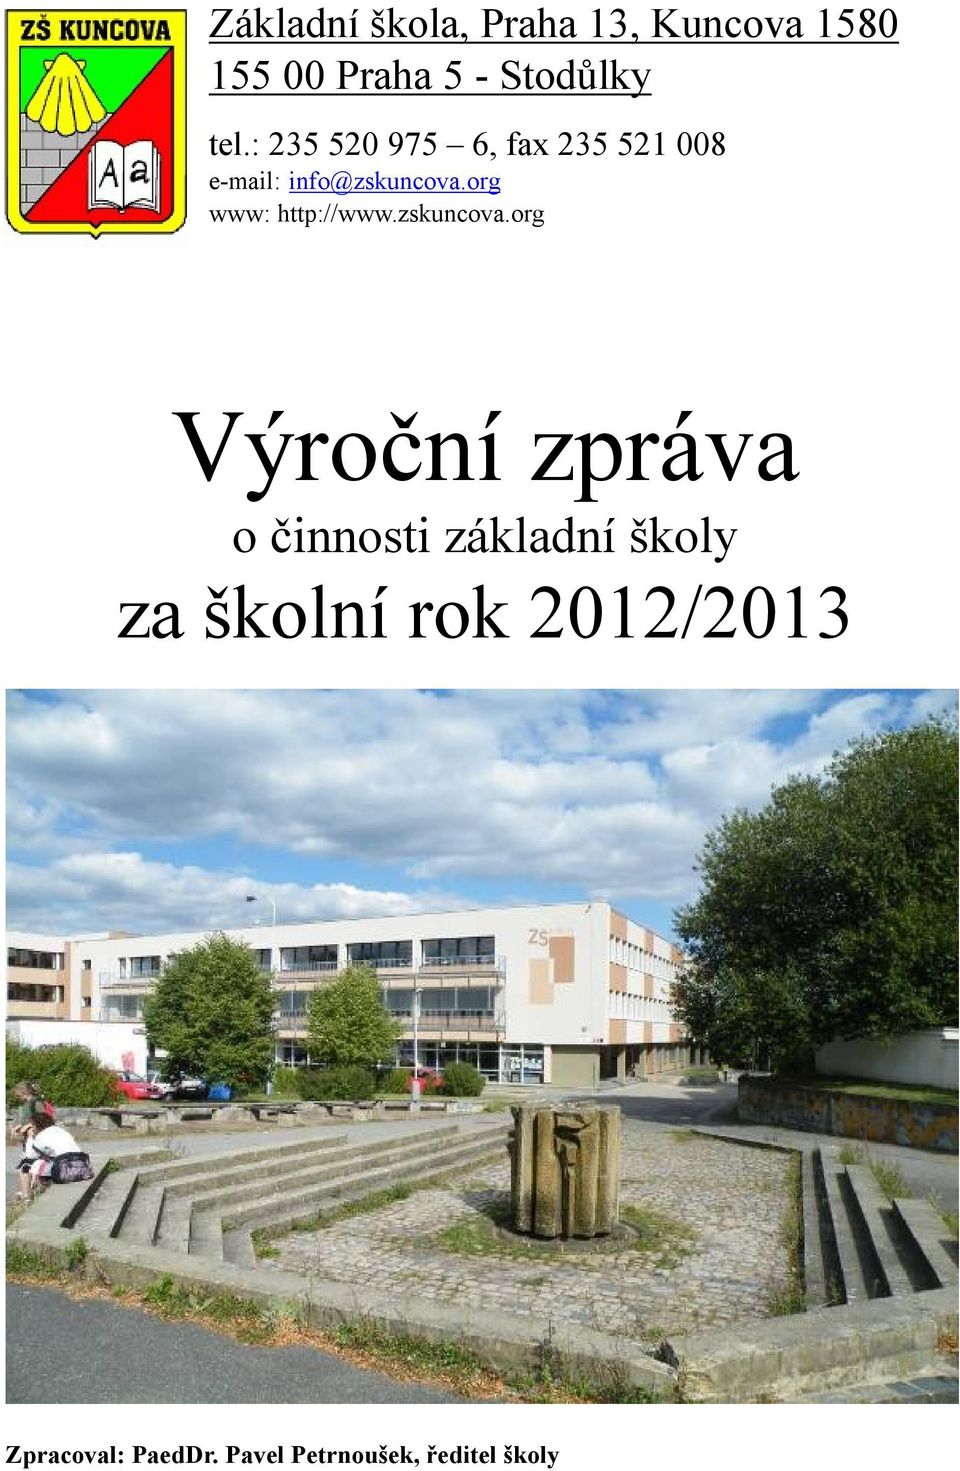 org www: http://www.zskuncova.